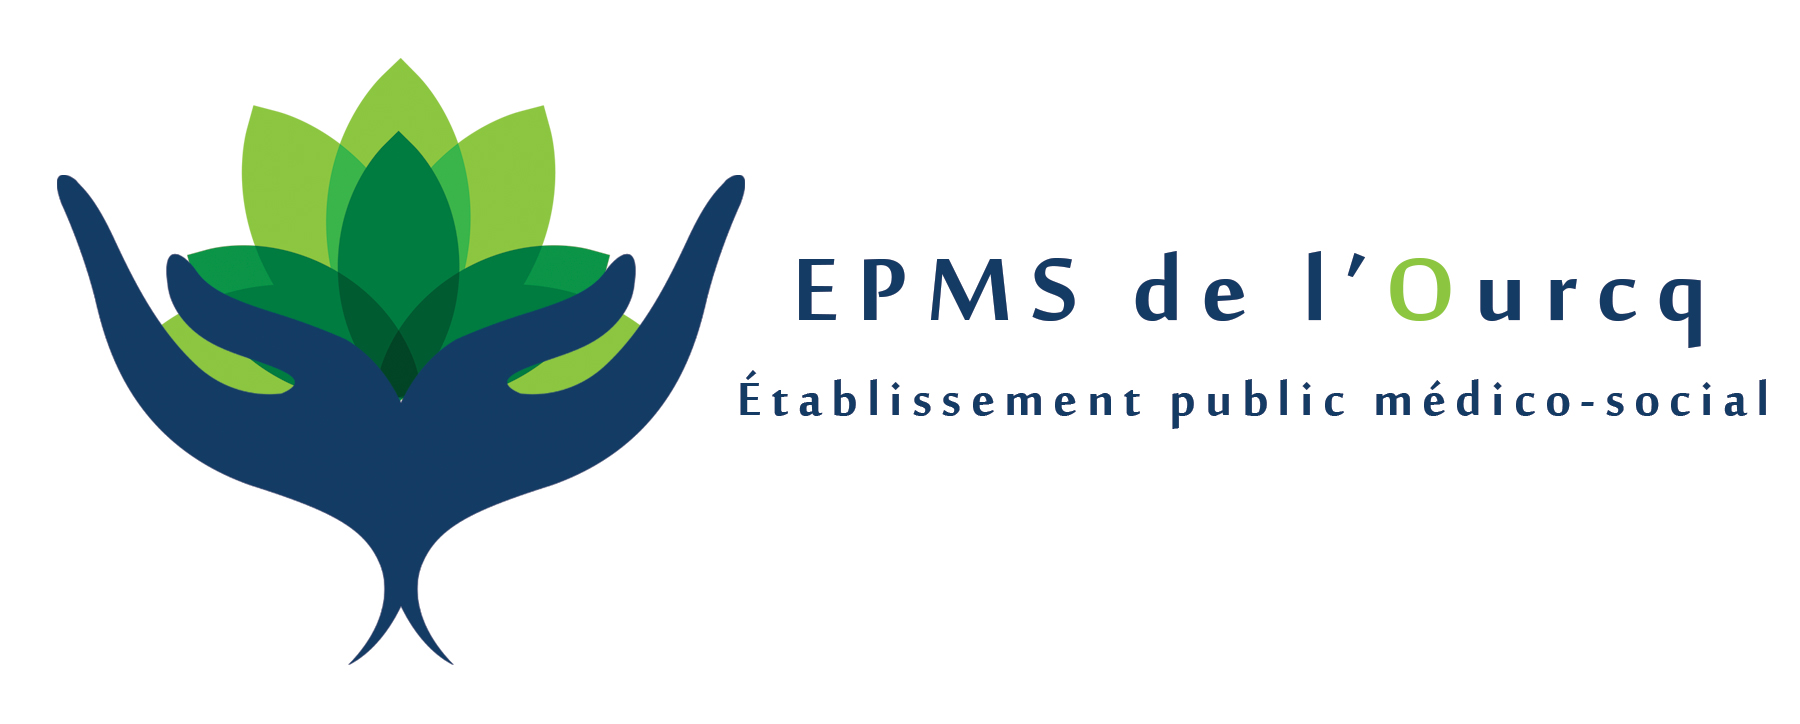 EPMS de l'Ourcq